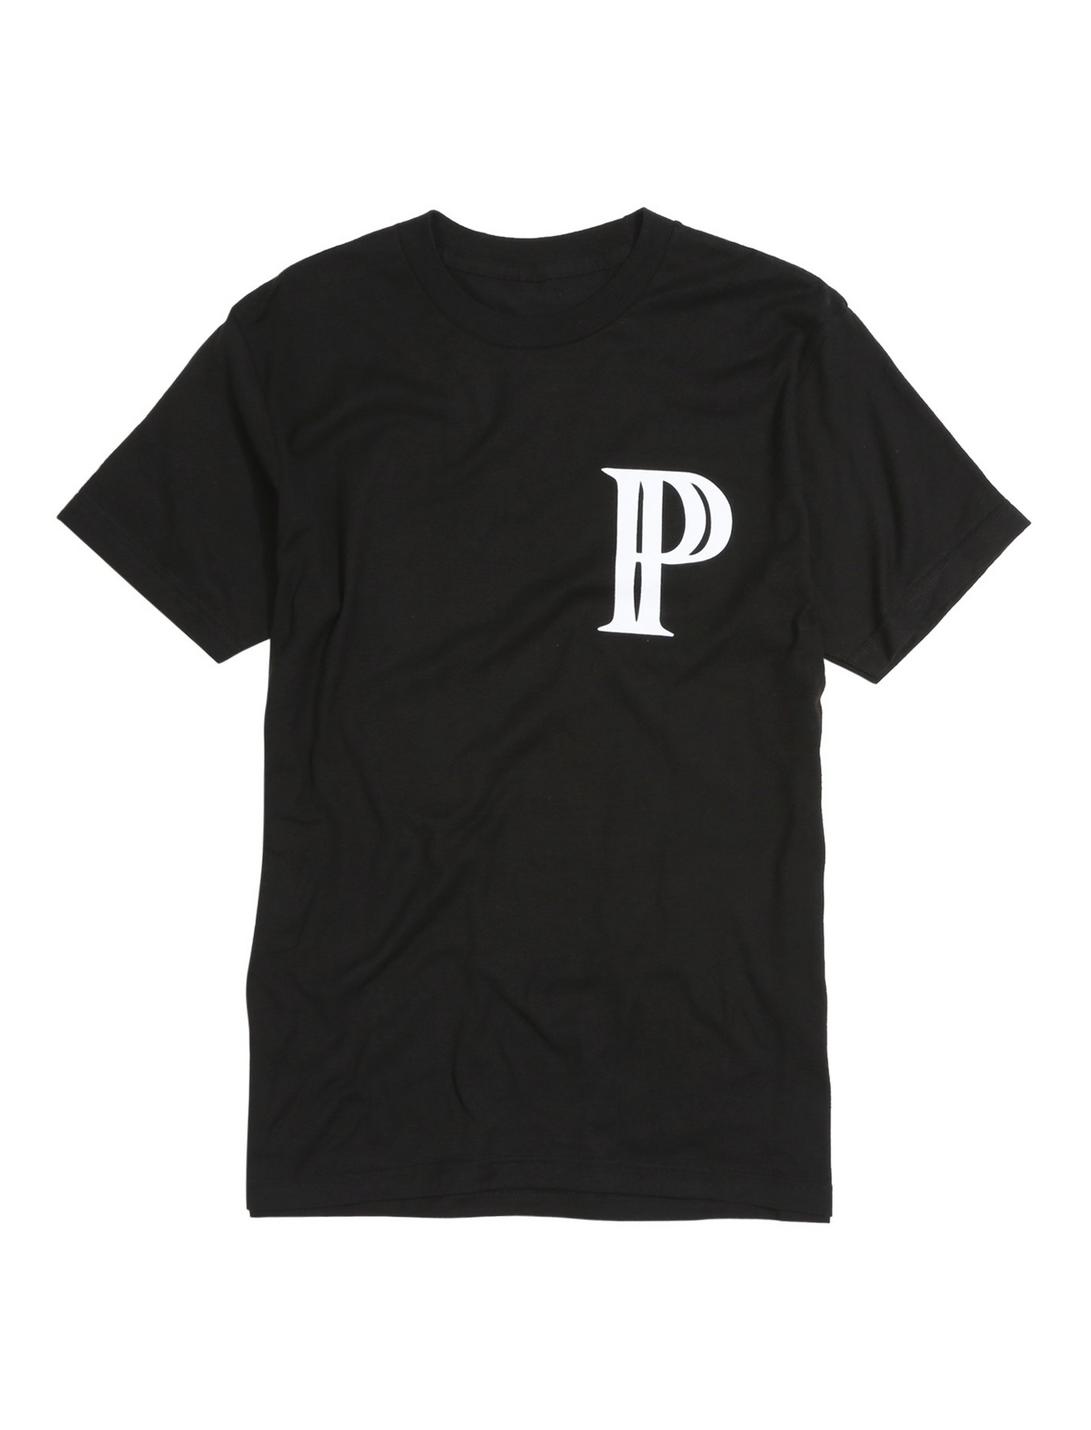 Pvris Broken Mirror T-Shirt, BLACK, hi-res